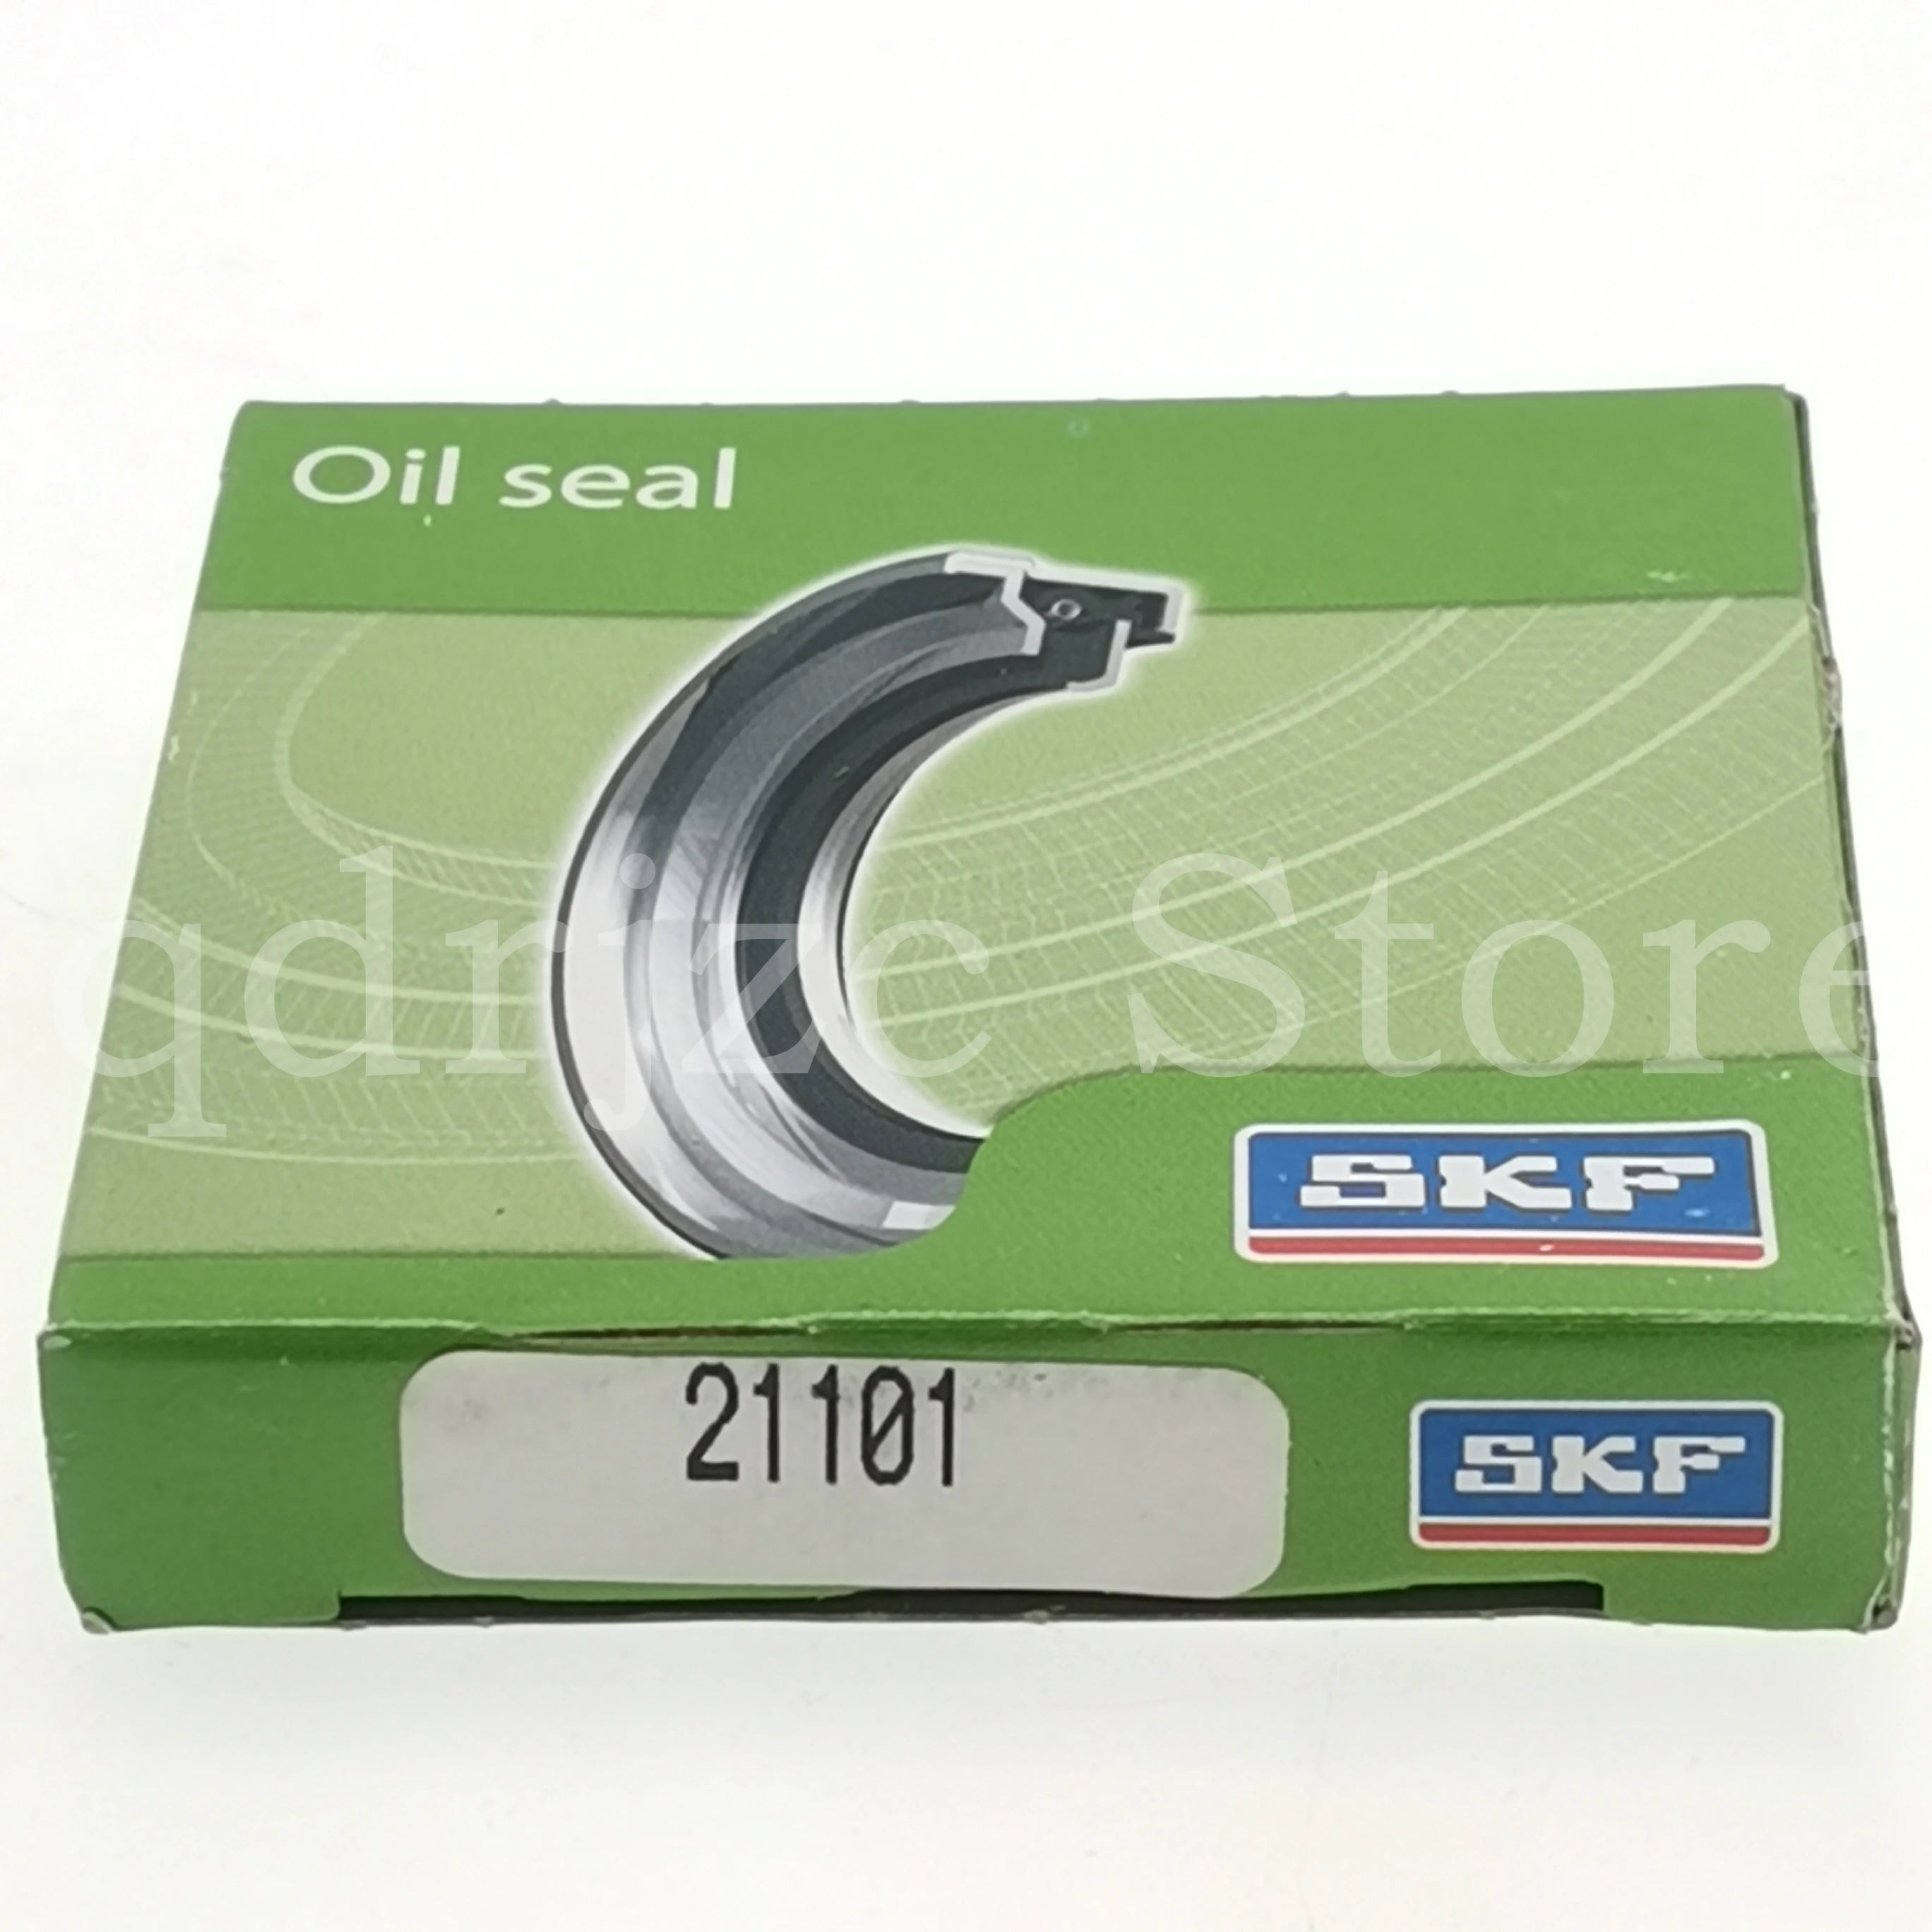 SKF OIL SEAL CR 21101 oil-seal 53.975mm X 73.03mm X 6.35mm AliExpress